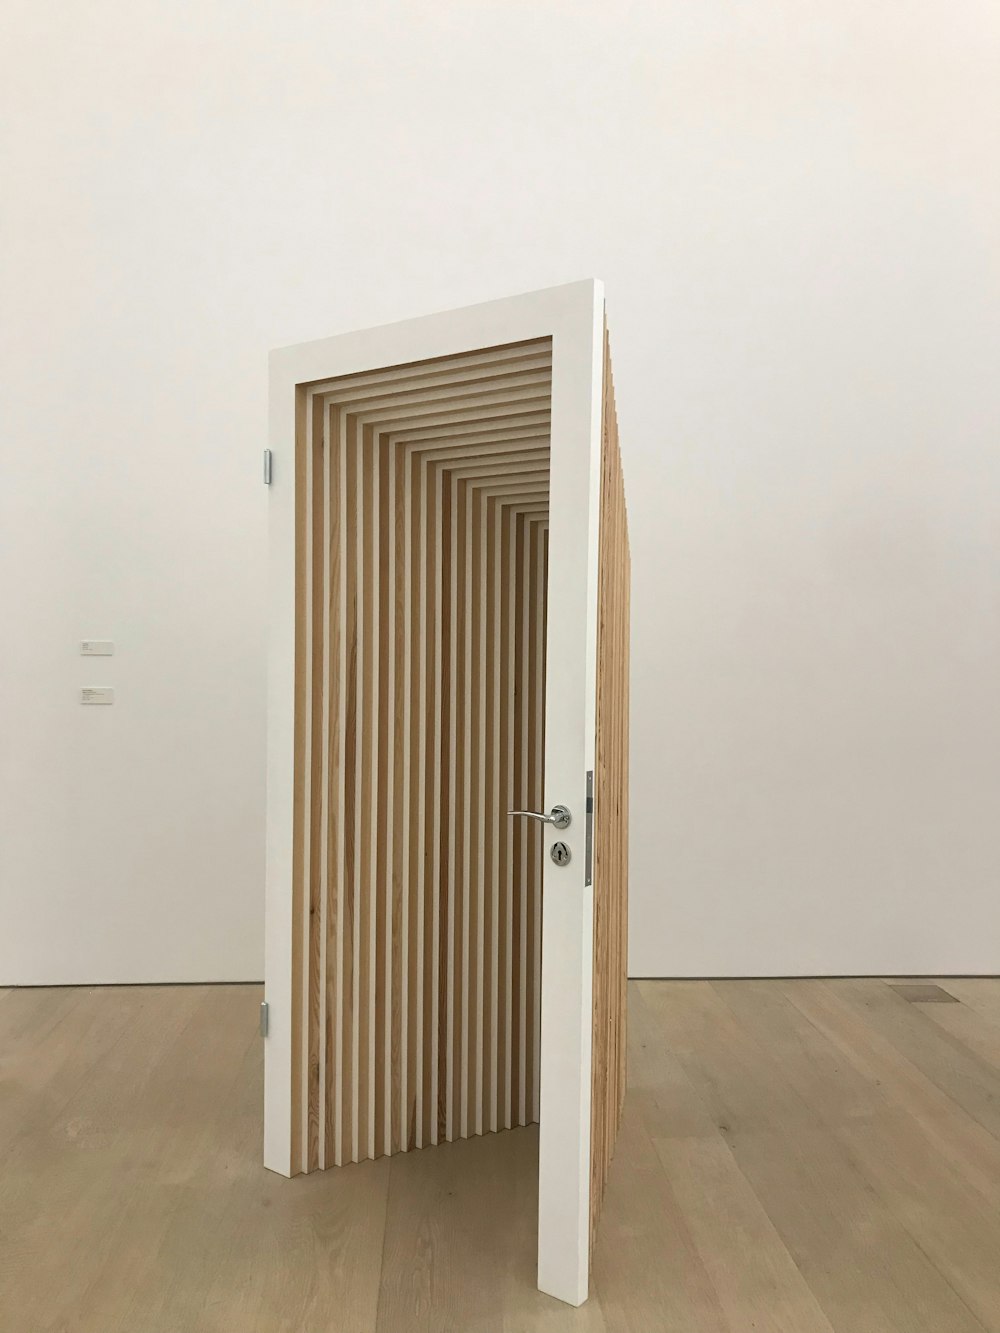 an open door in the middle of a wooden floor